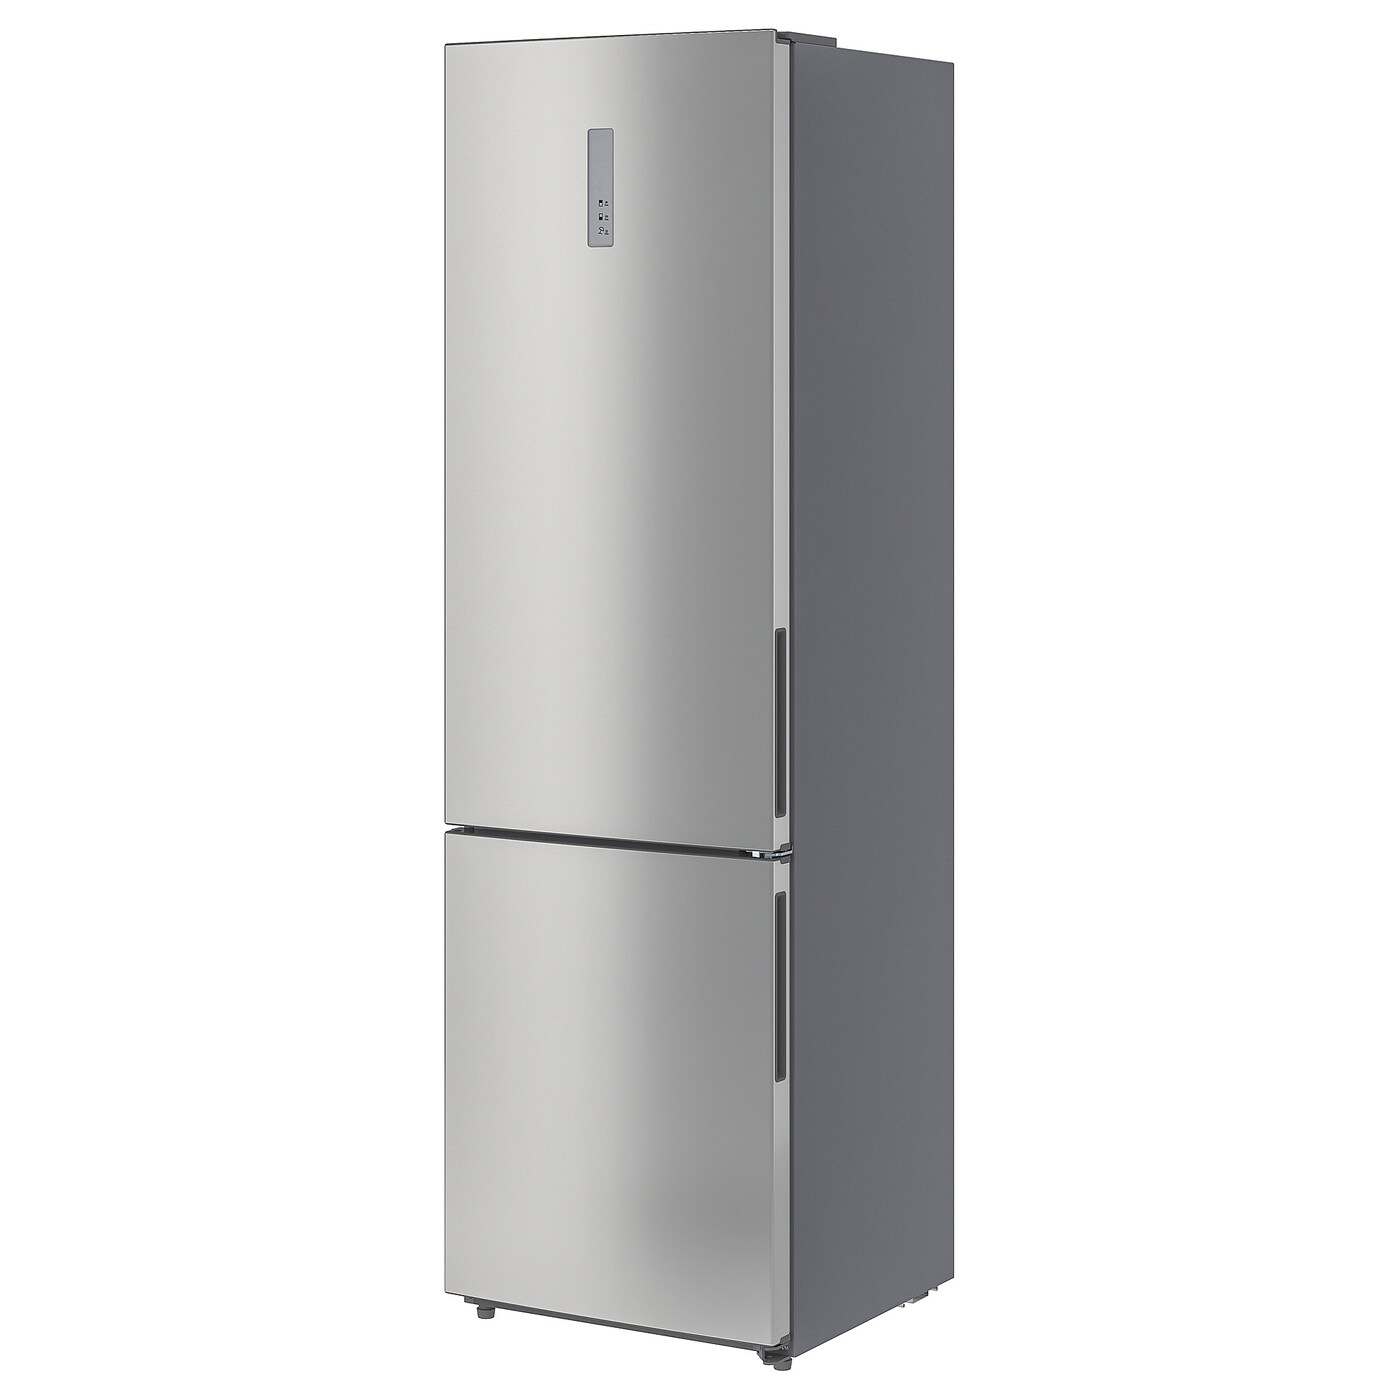 ИКЕА VÄLGÅNG Холодильник / Морозильна камера - IKEA 700 Окремостоячий / сталь 246/83 л, 004.901.26